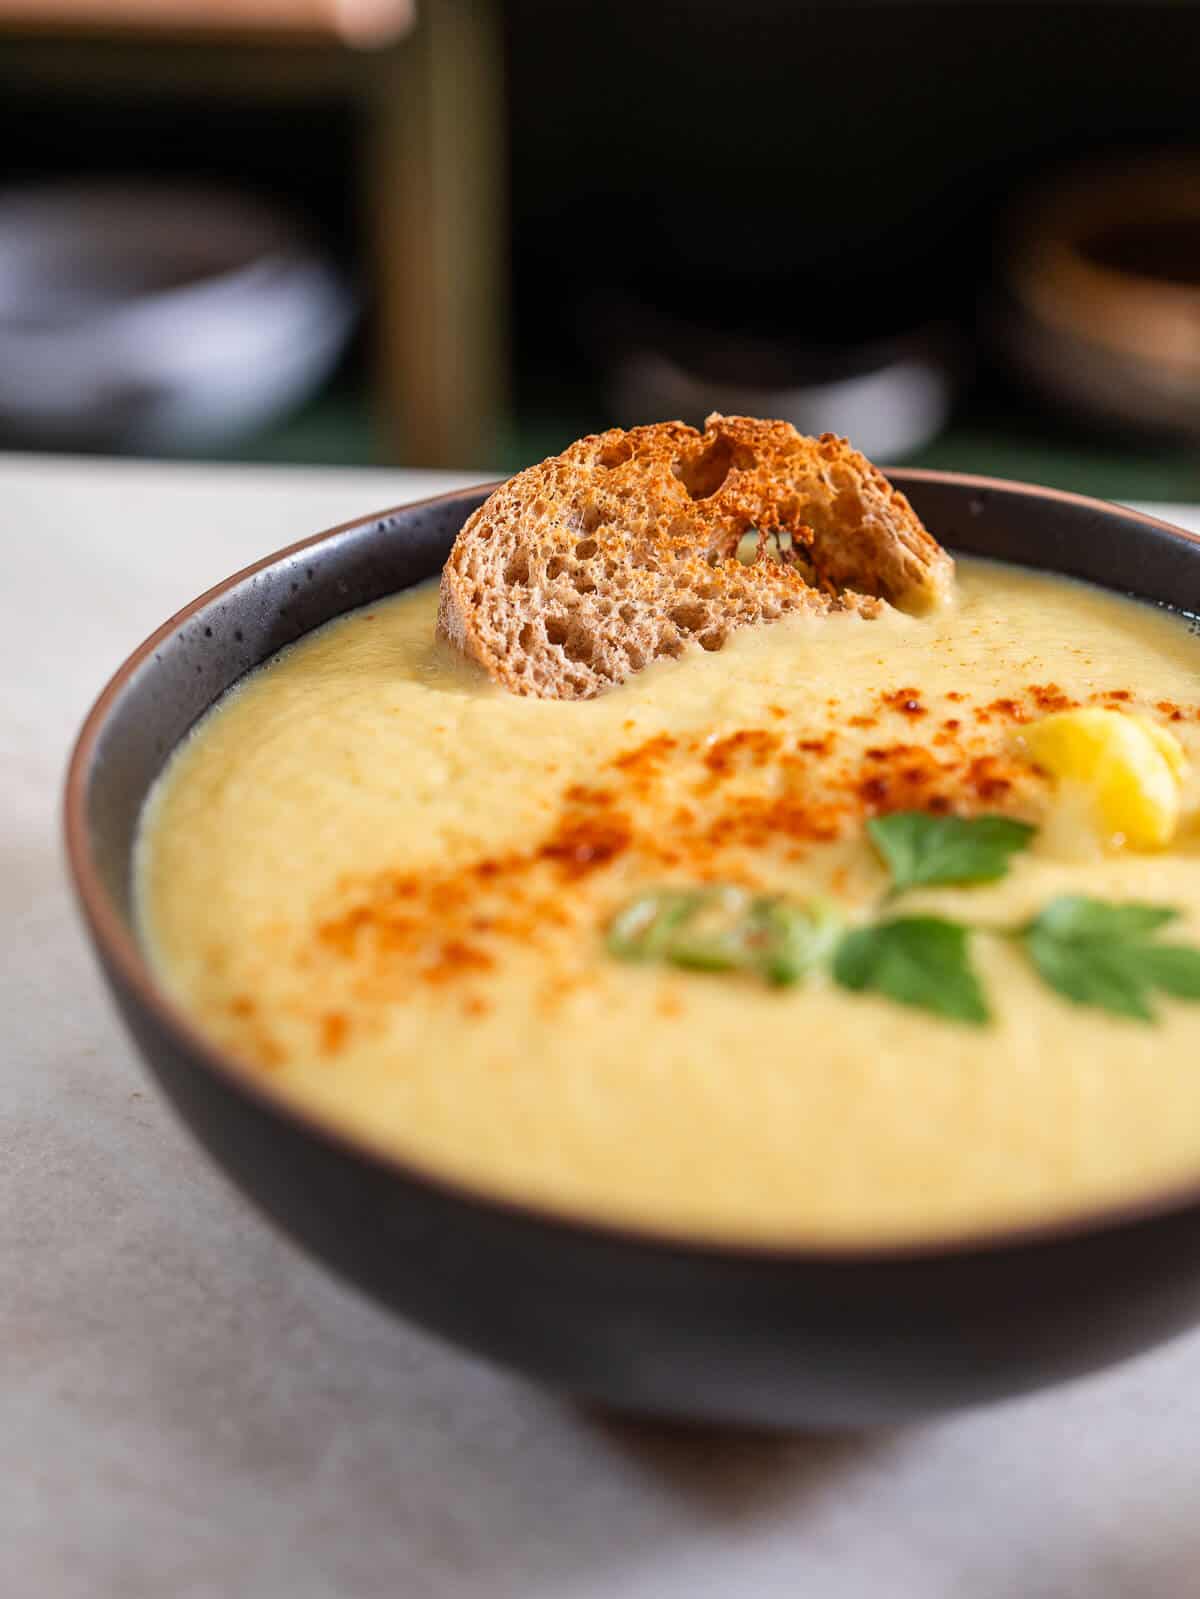 sopa de coliflor servida con pan italiano artesanal tostado.